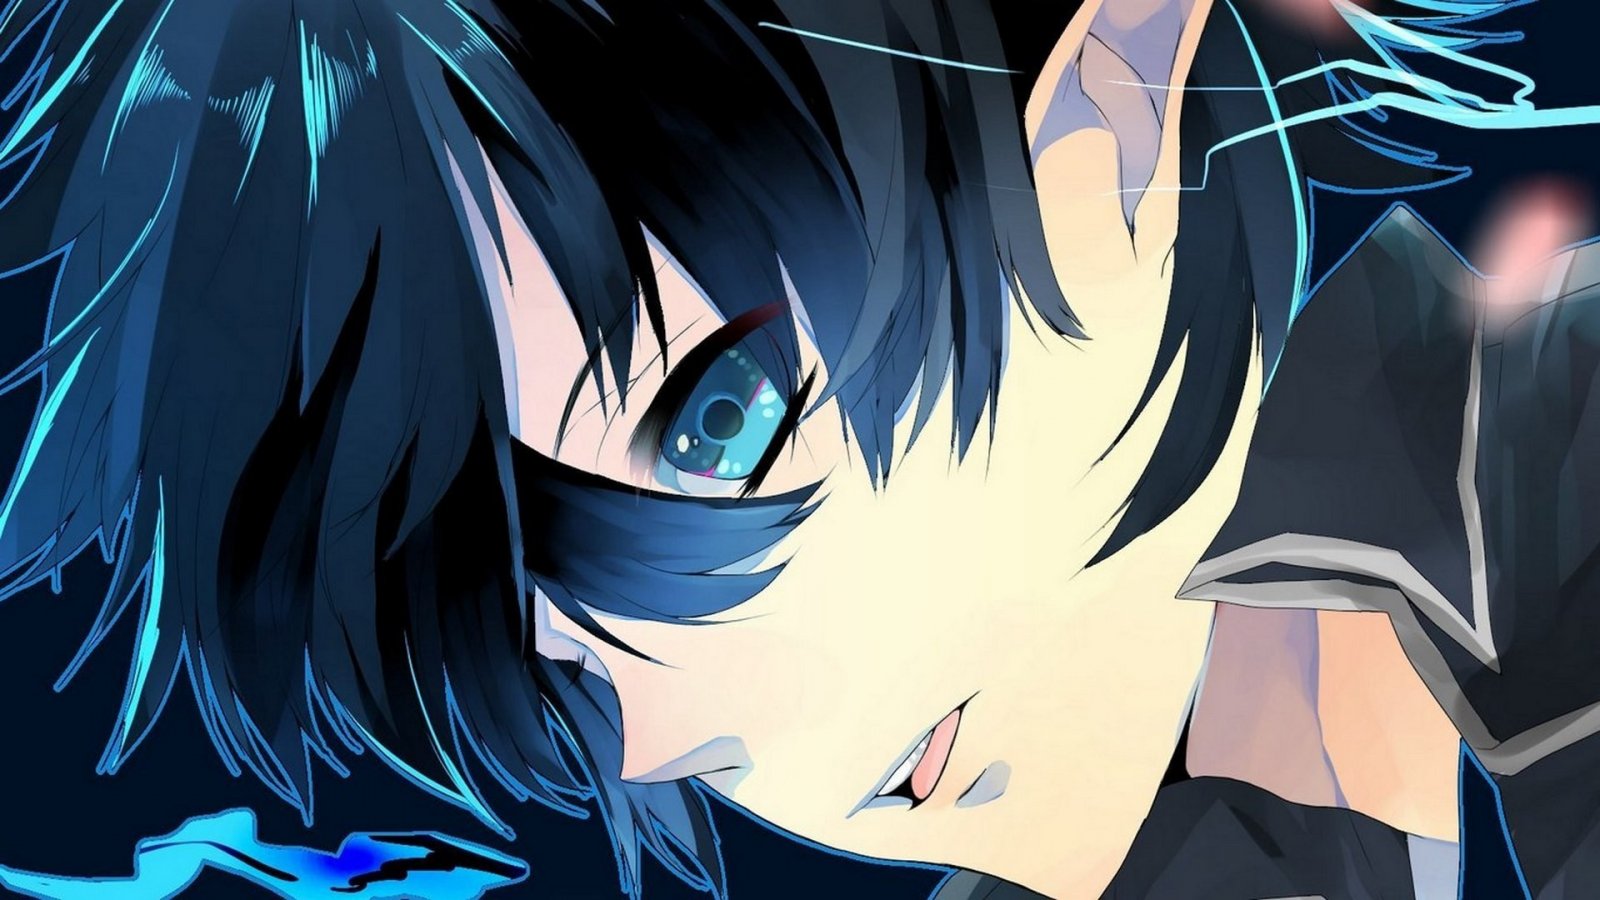 Anime Guy Black Hair Blue Eyes 1920x1080 Wallpaper406481 Jpg